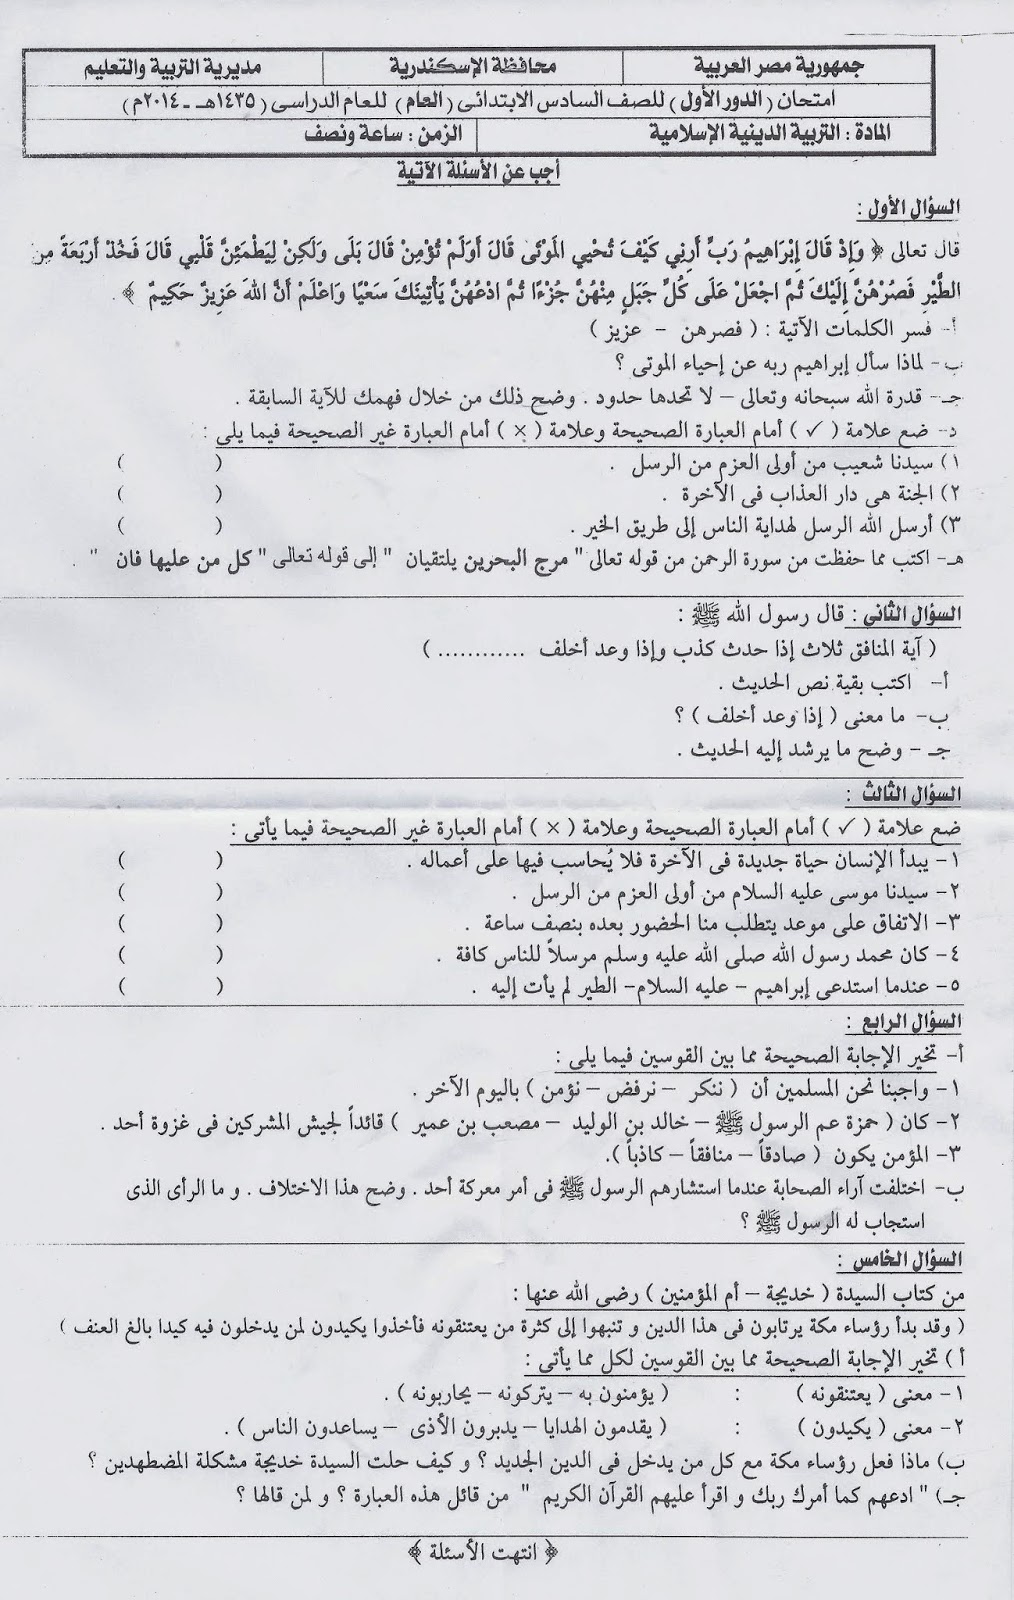 امتحان التربية الدينية للصف السادس الابتدائى الترم الثانى 2014 محافظة اسكندرية